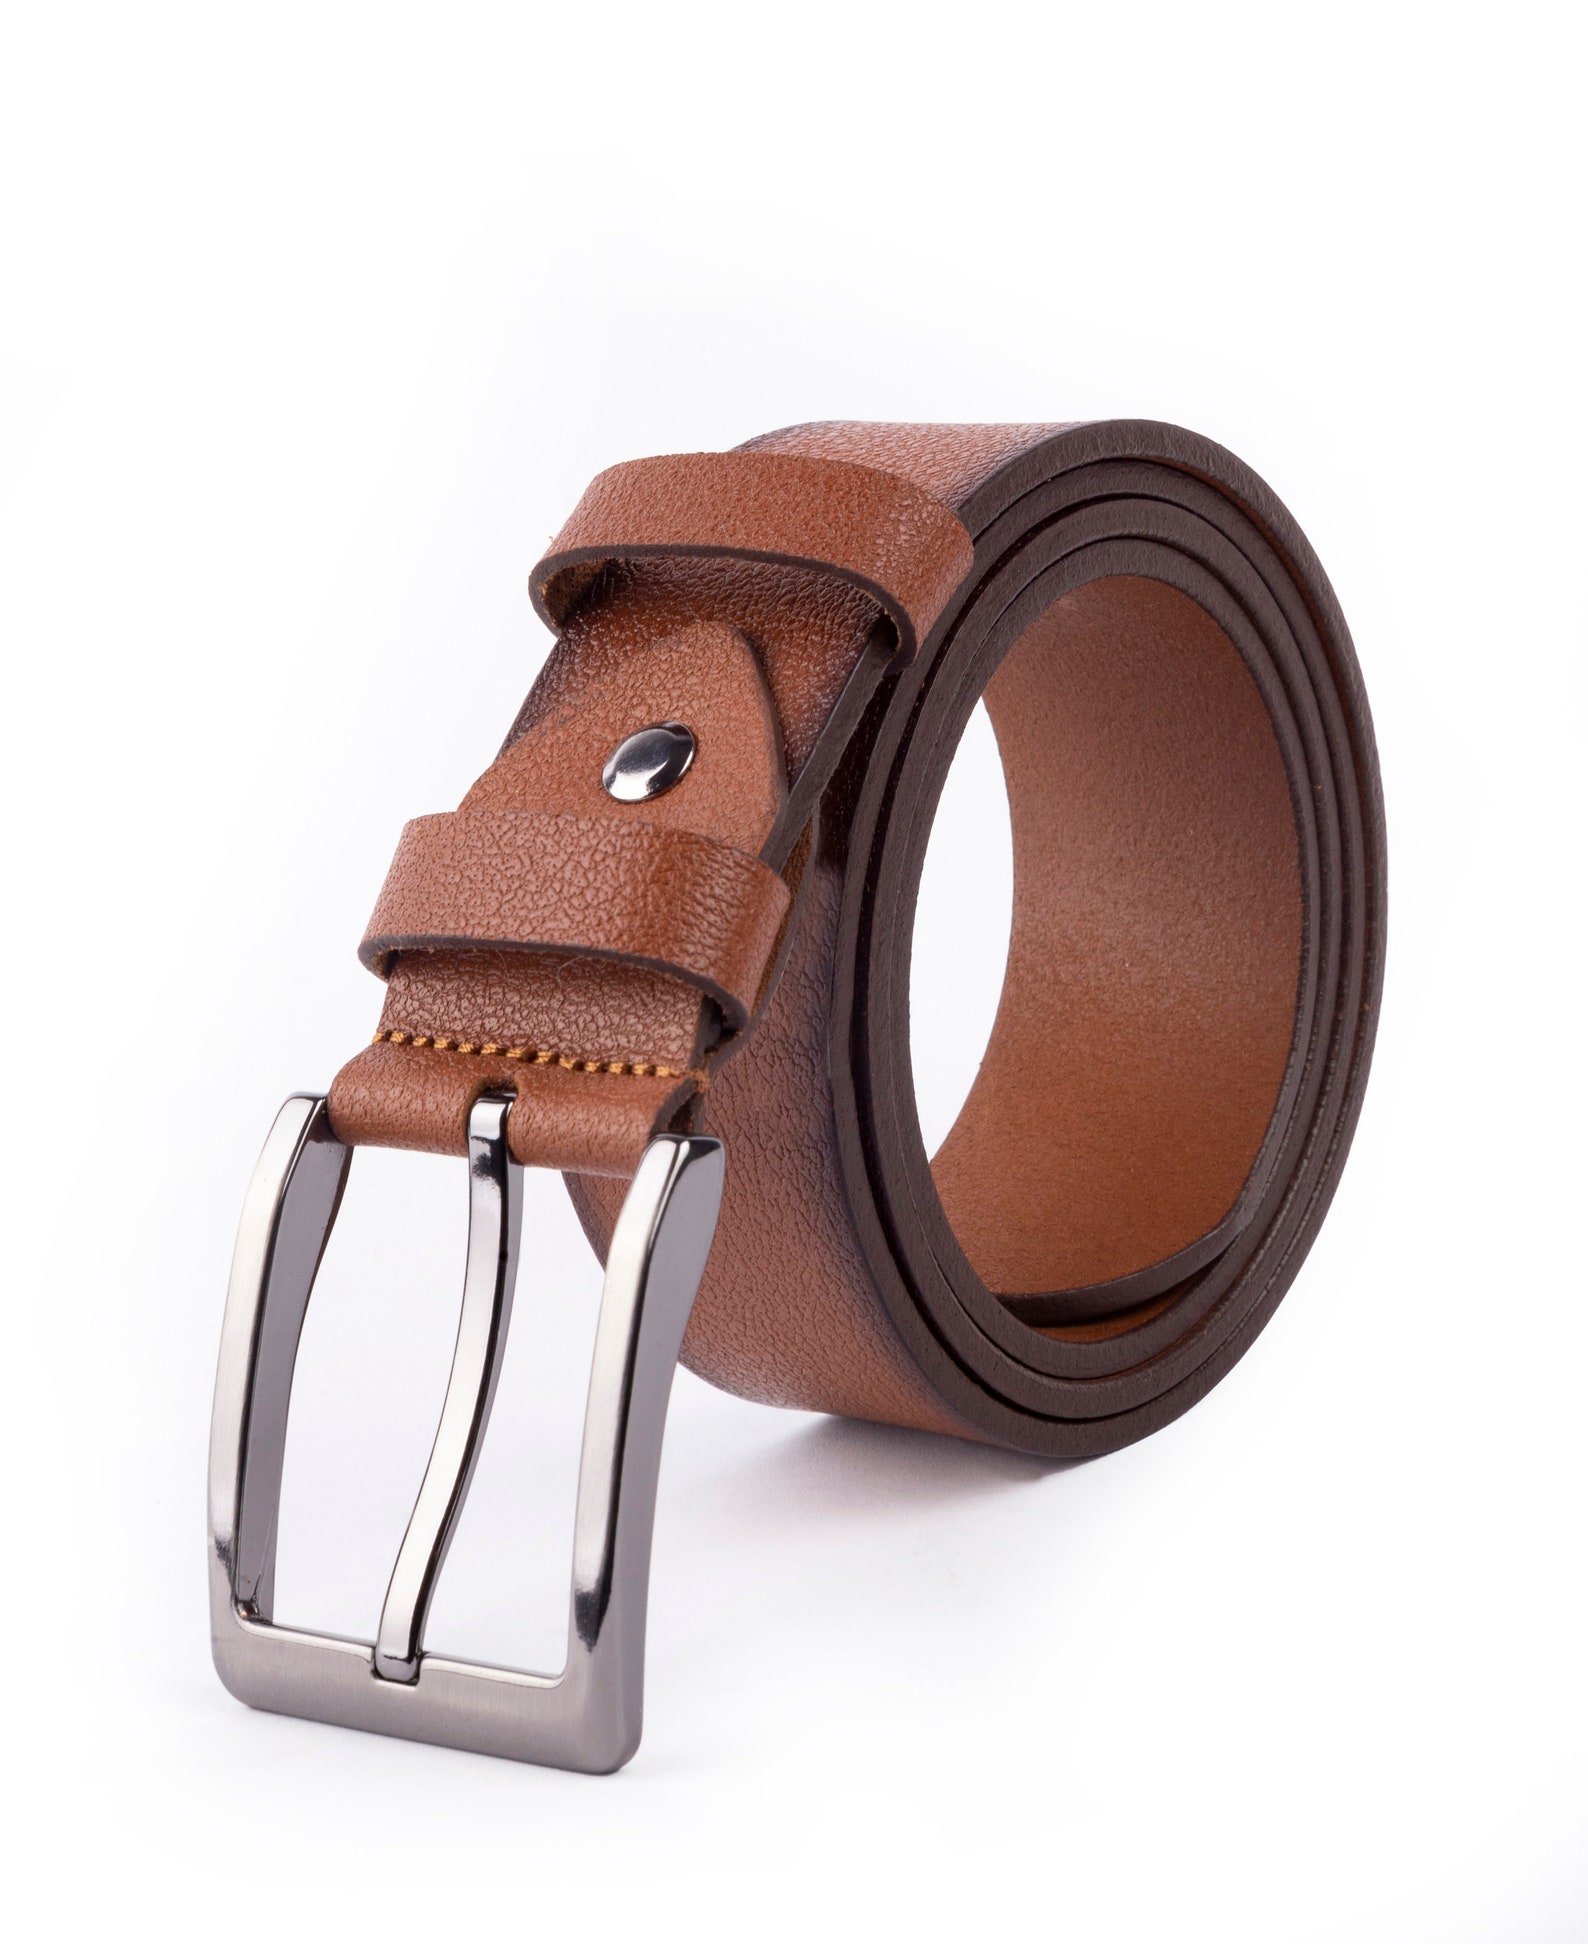 Buffalo Leather Belt for Men Adjustable Leather Belt Genuine | Etsy